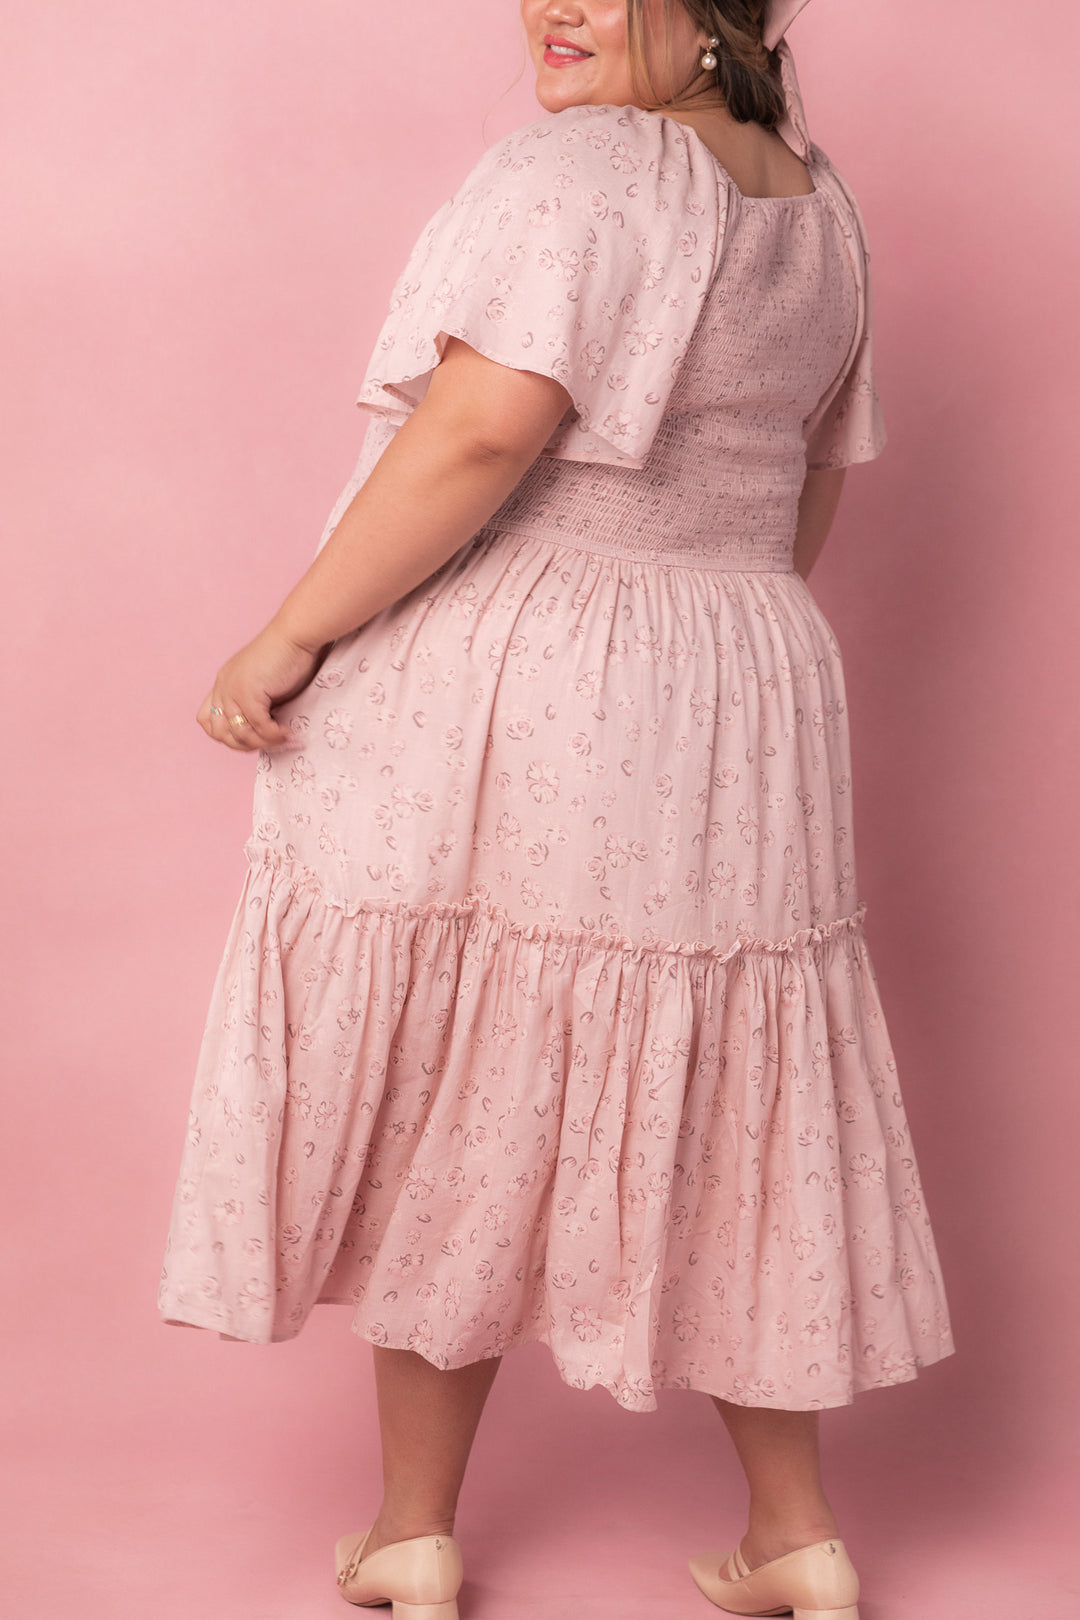 Lennon Dress in Dusty Pink-Adult